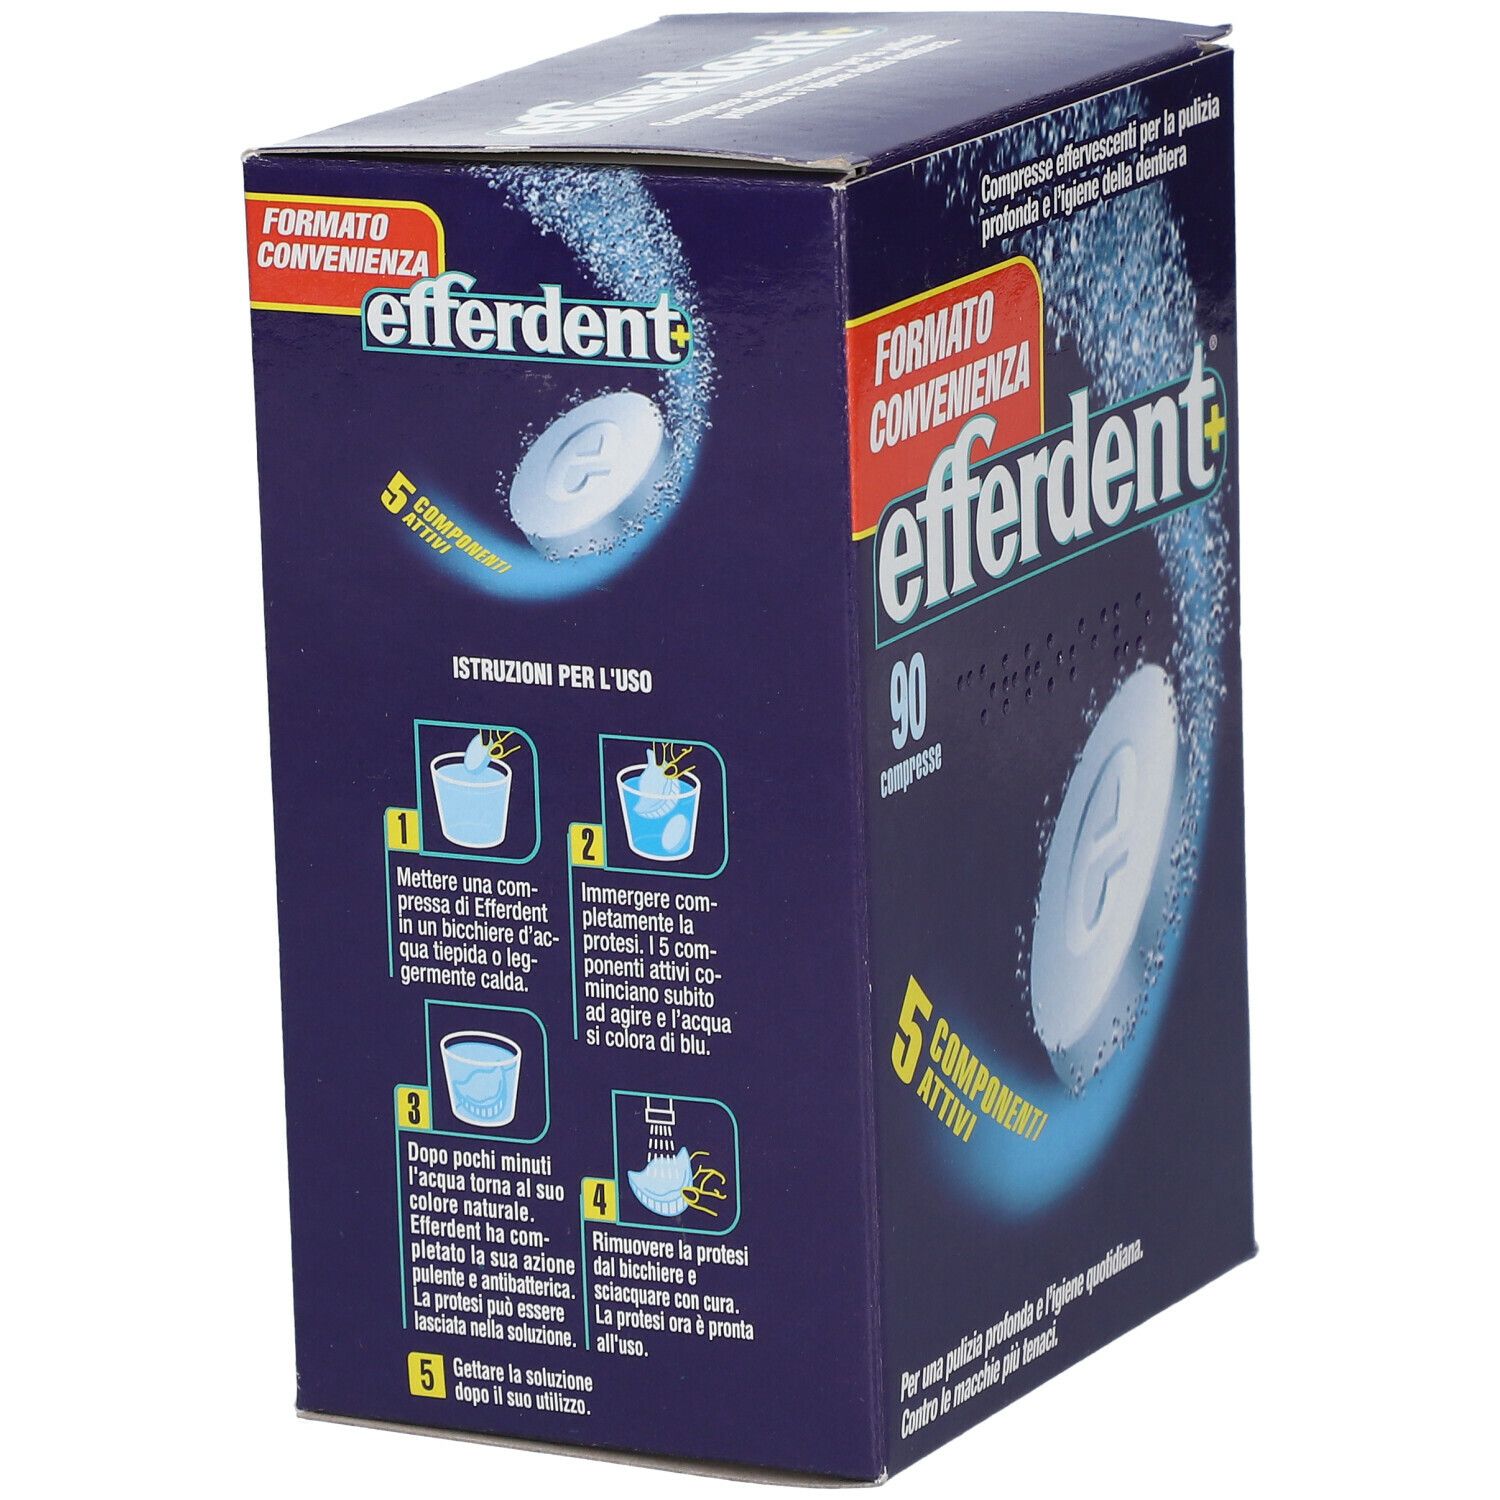 Efferdent®+ 90 Compresse Effervescenti Pulizia Dentiere